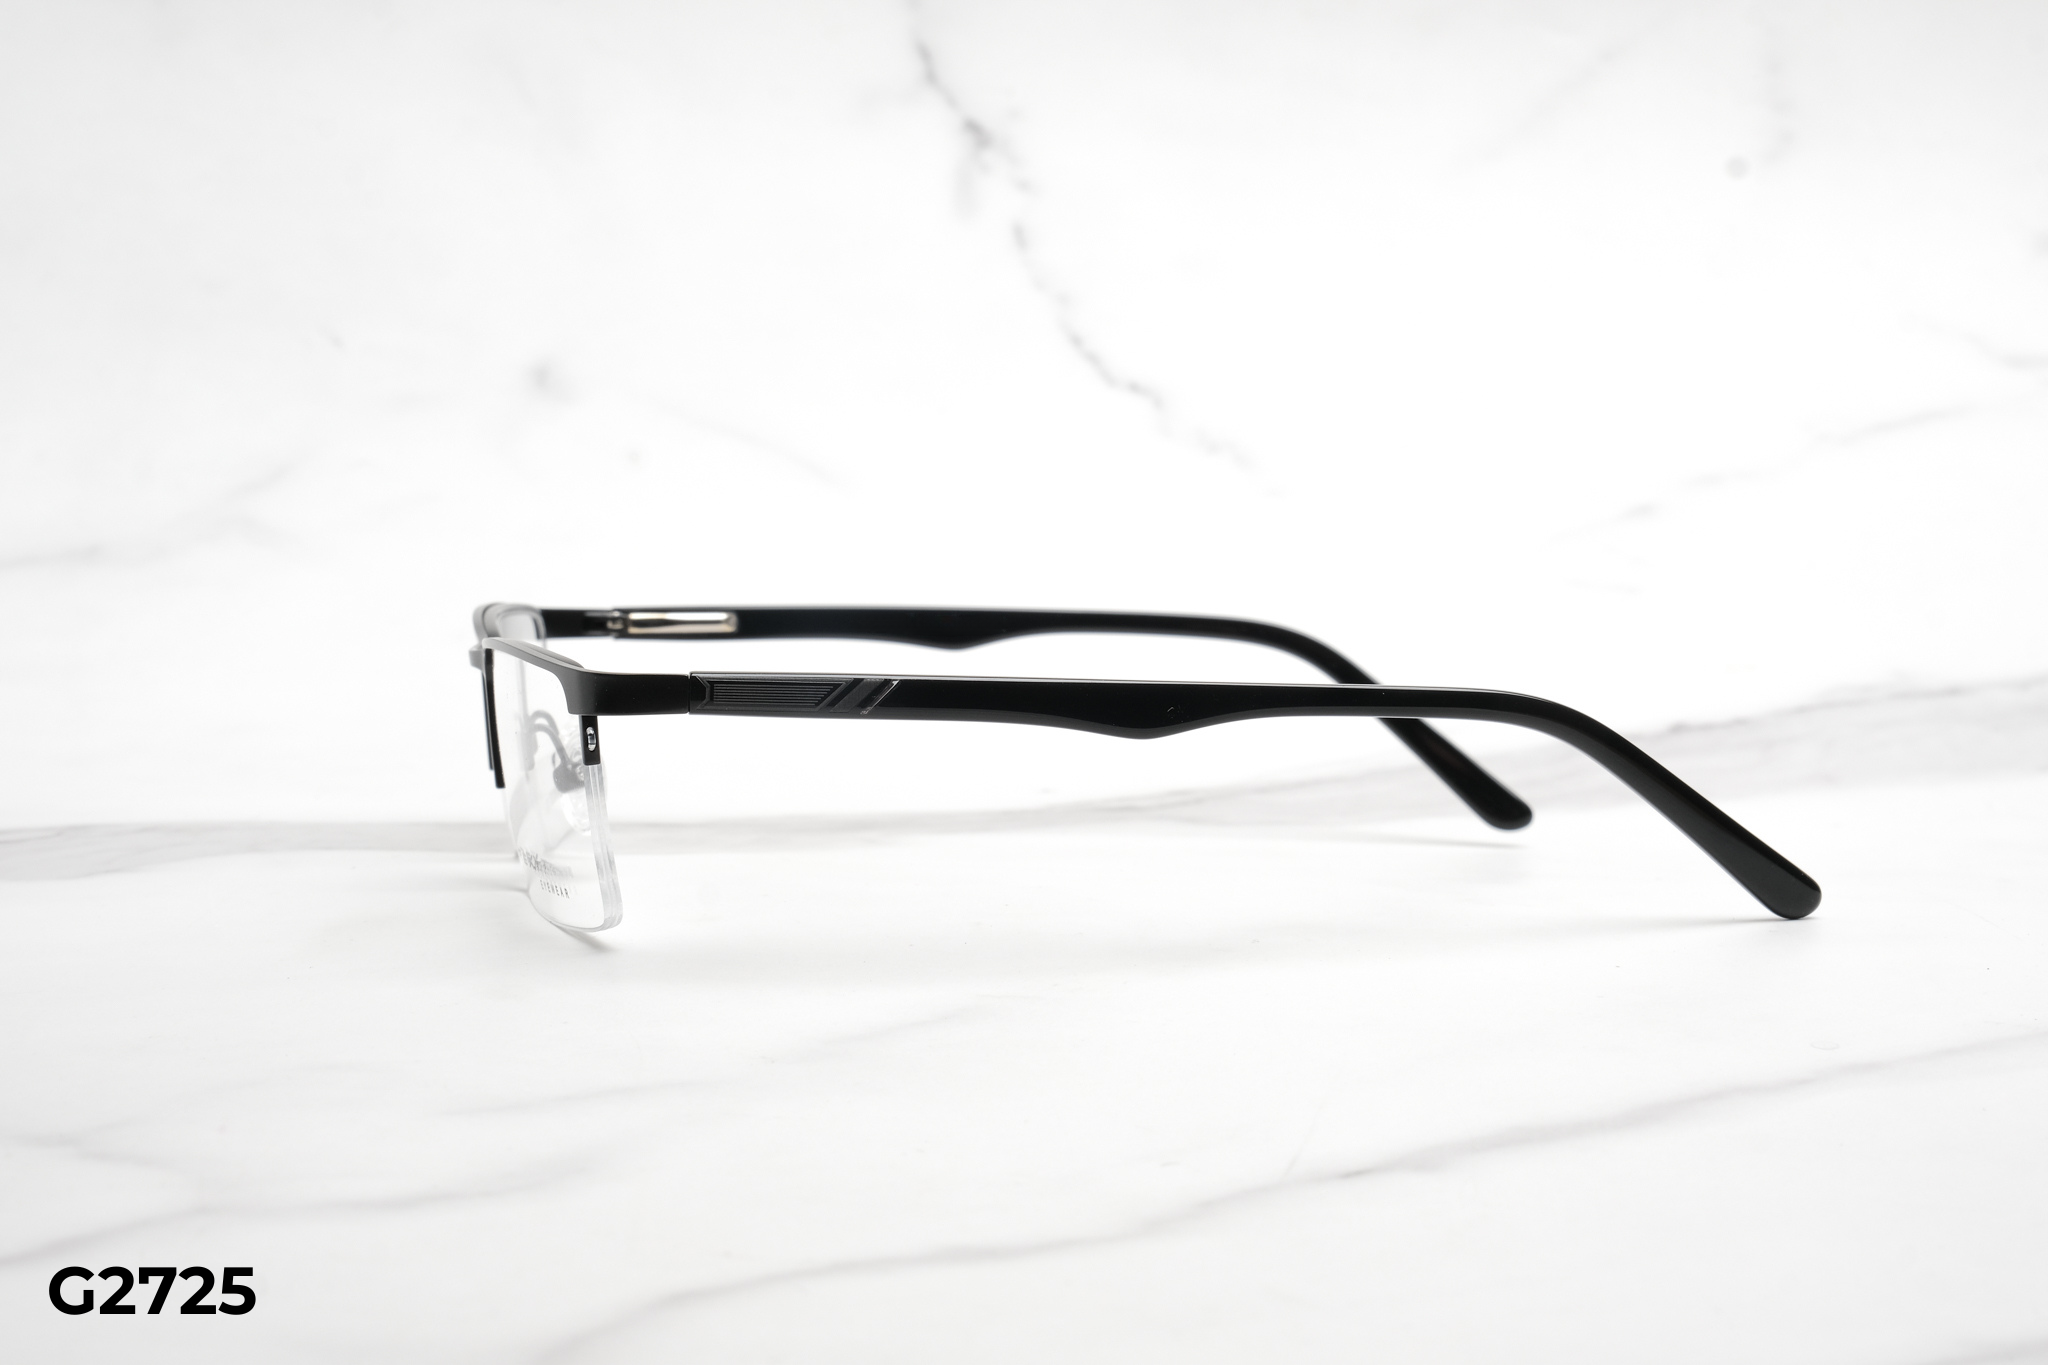  Rex-ton Eyewear - Glasses - G2725 